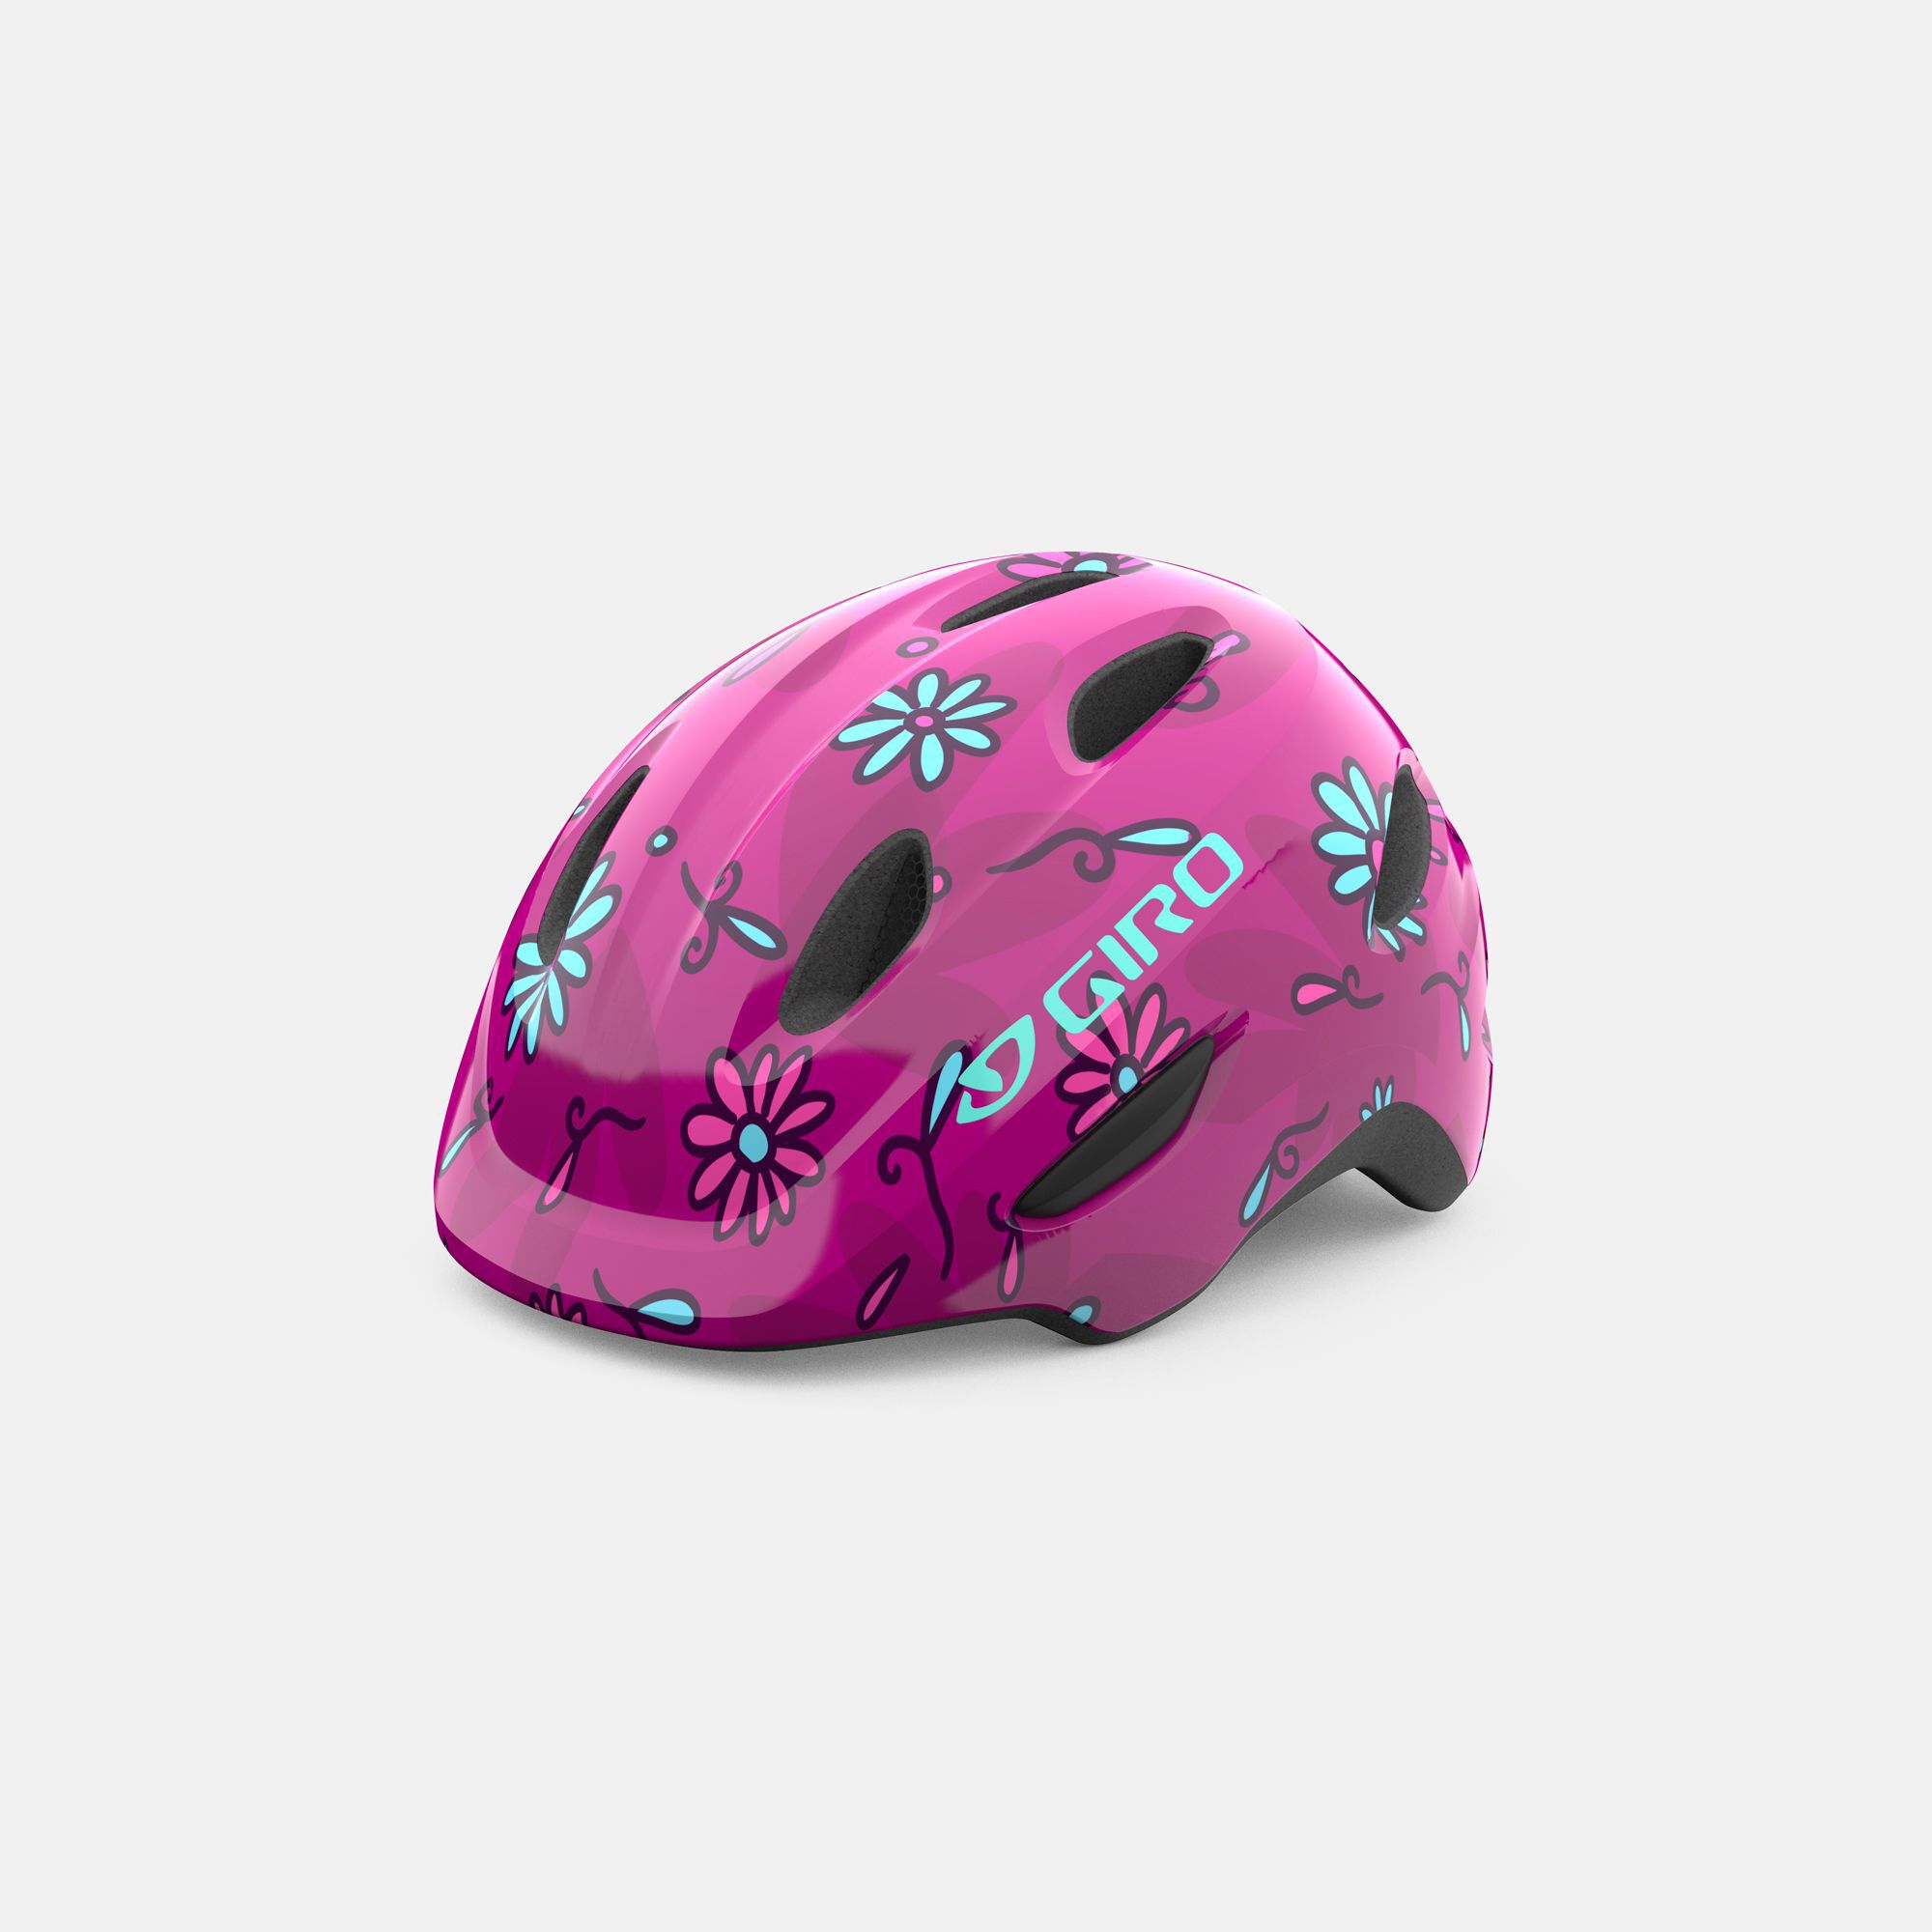 Bike helmets for children 